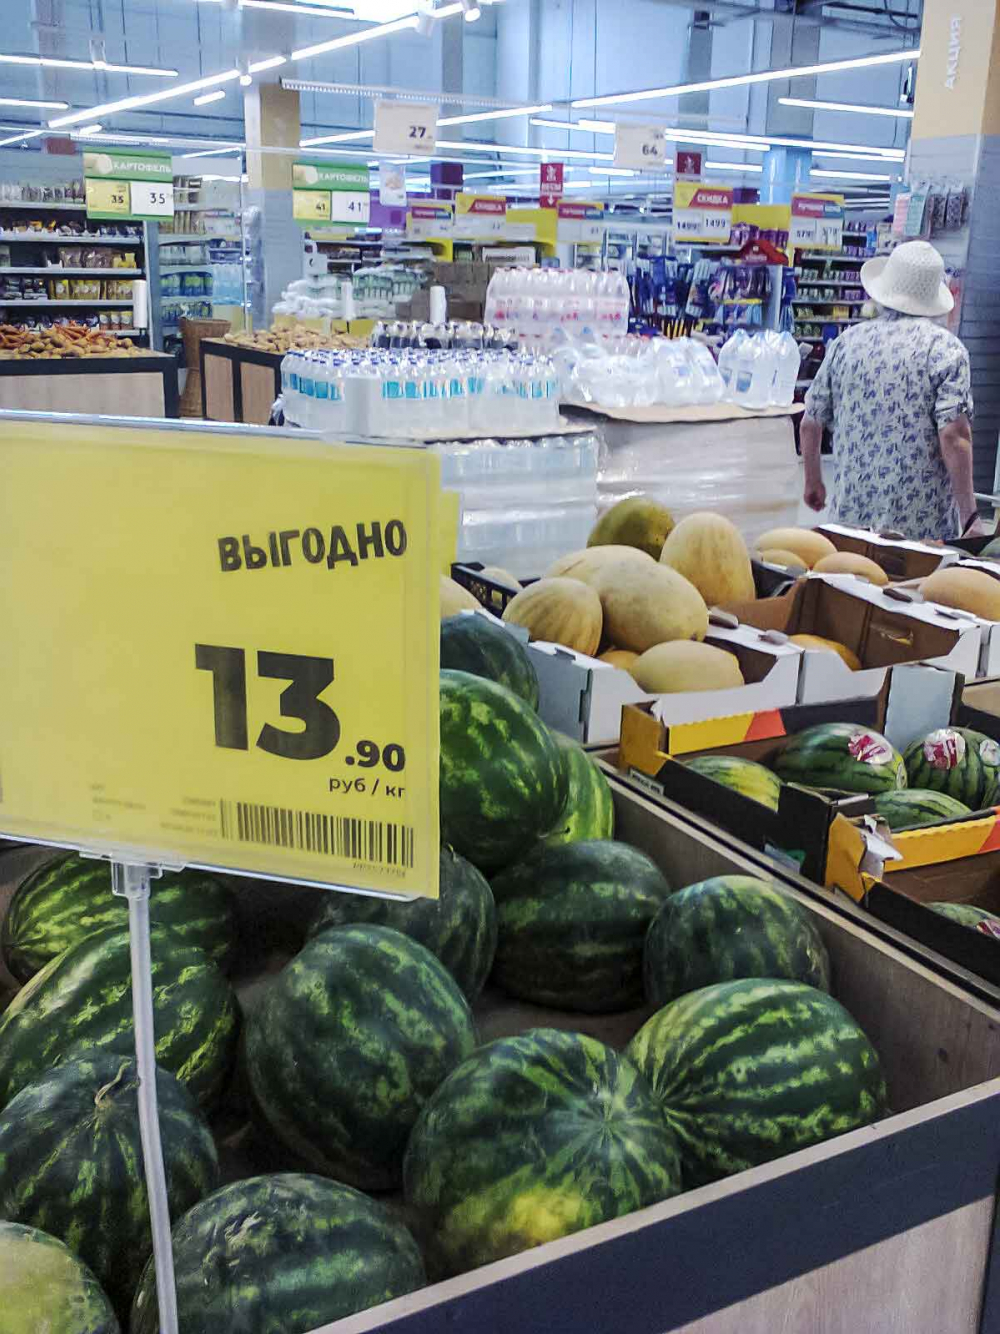 Сетевые магазины в Камышине решили «обвалить» цены на арбузы и дыни, но...